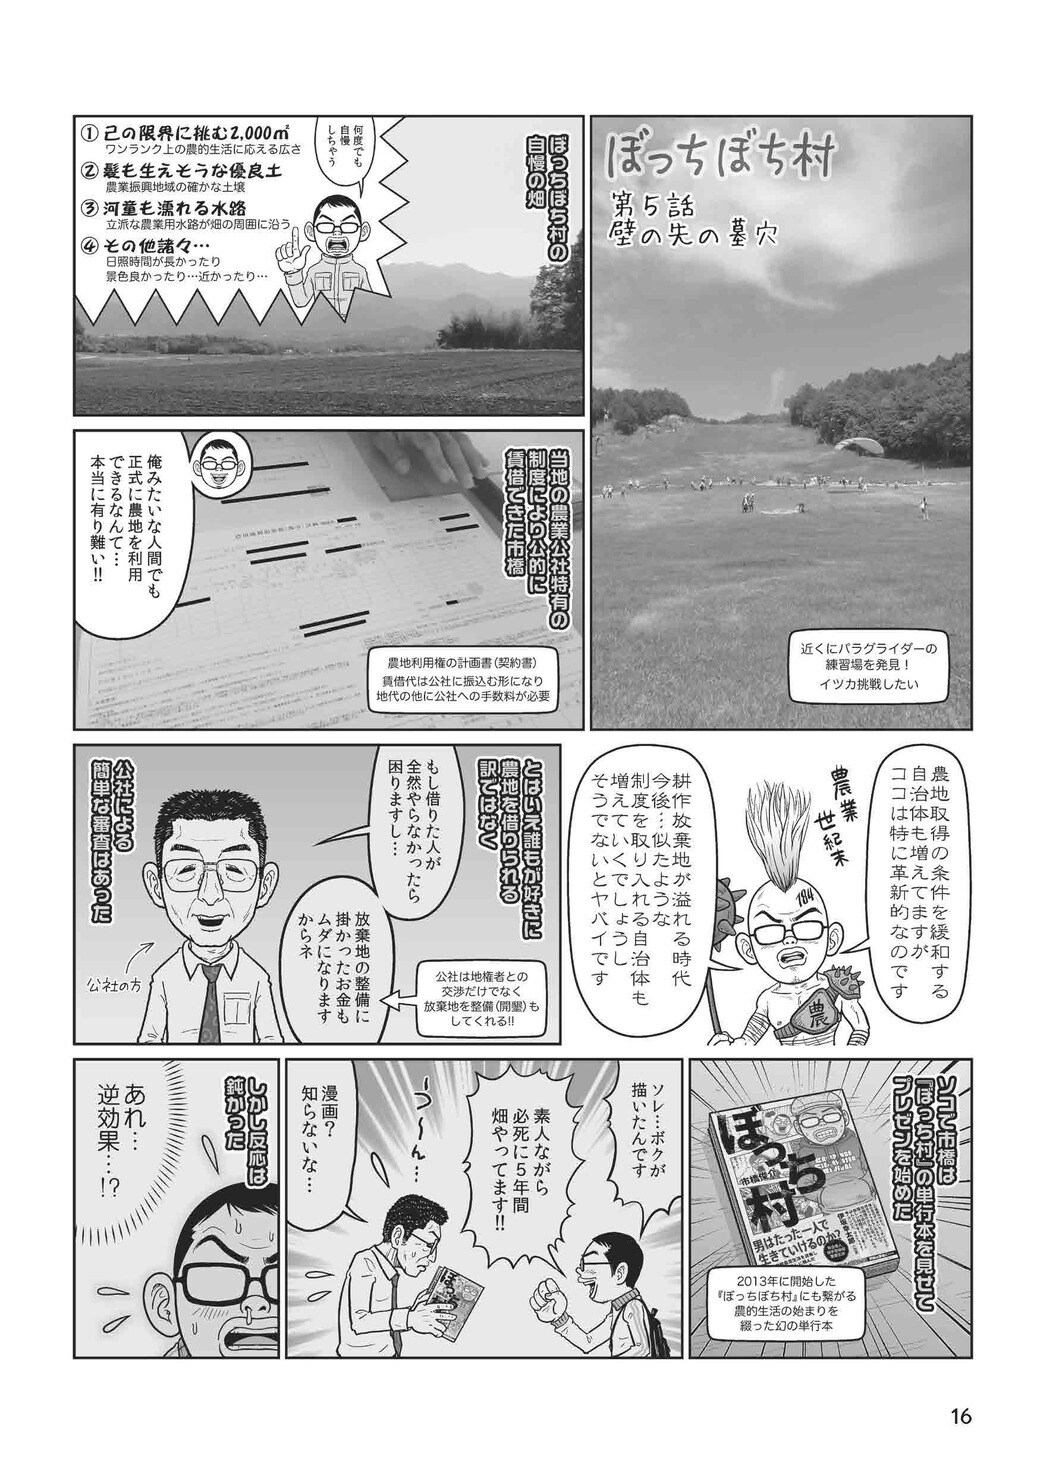 広い畑が欲しい と粘る男に役所が折れたワケ 漫画 東洋経済オンライン 経済ニュースの新基準